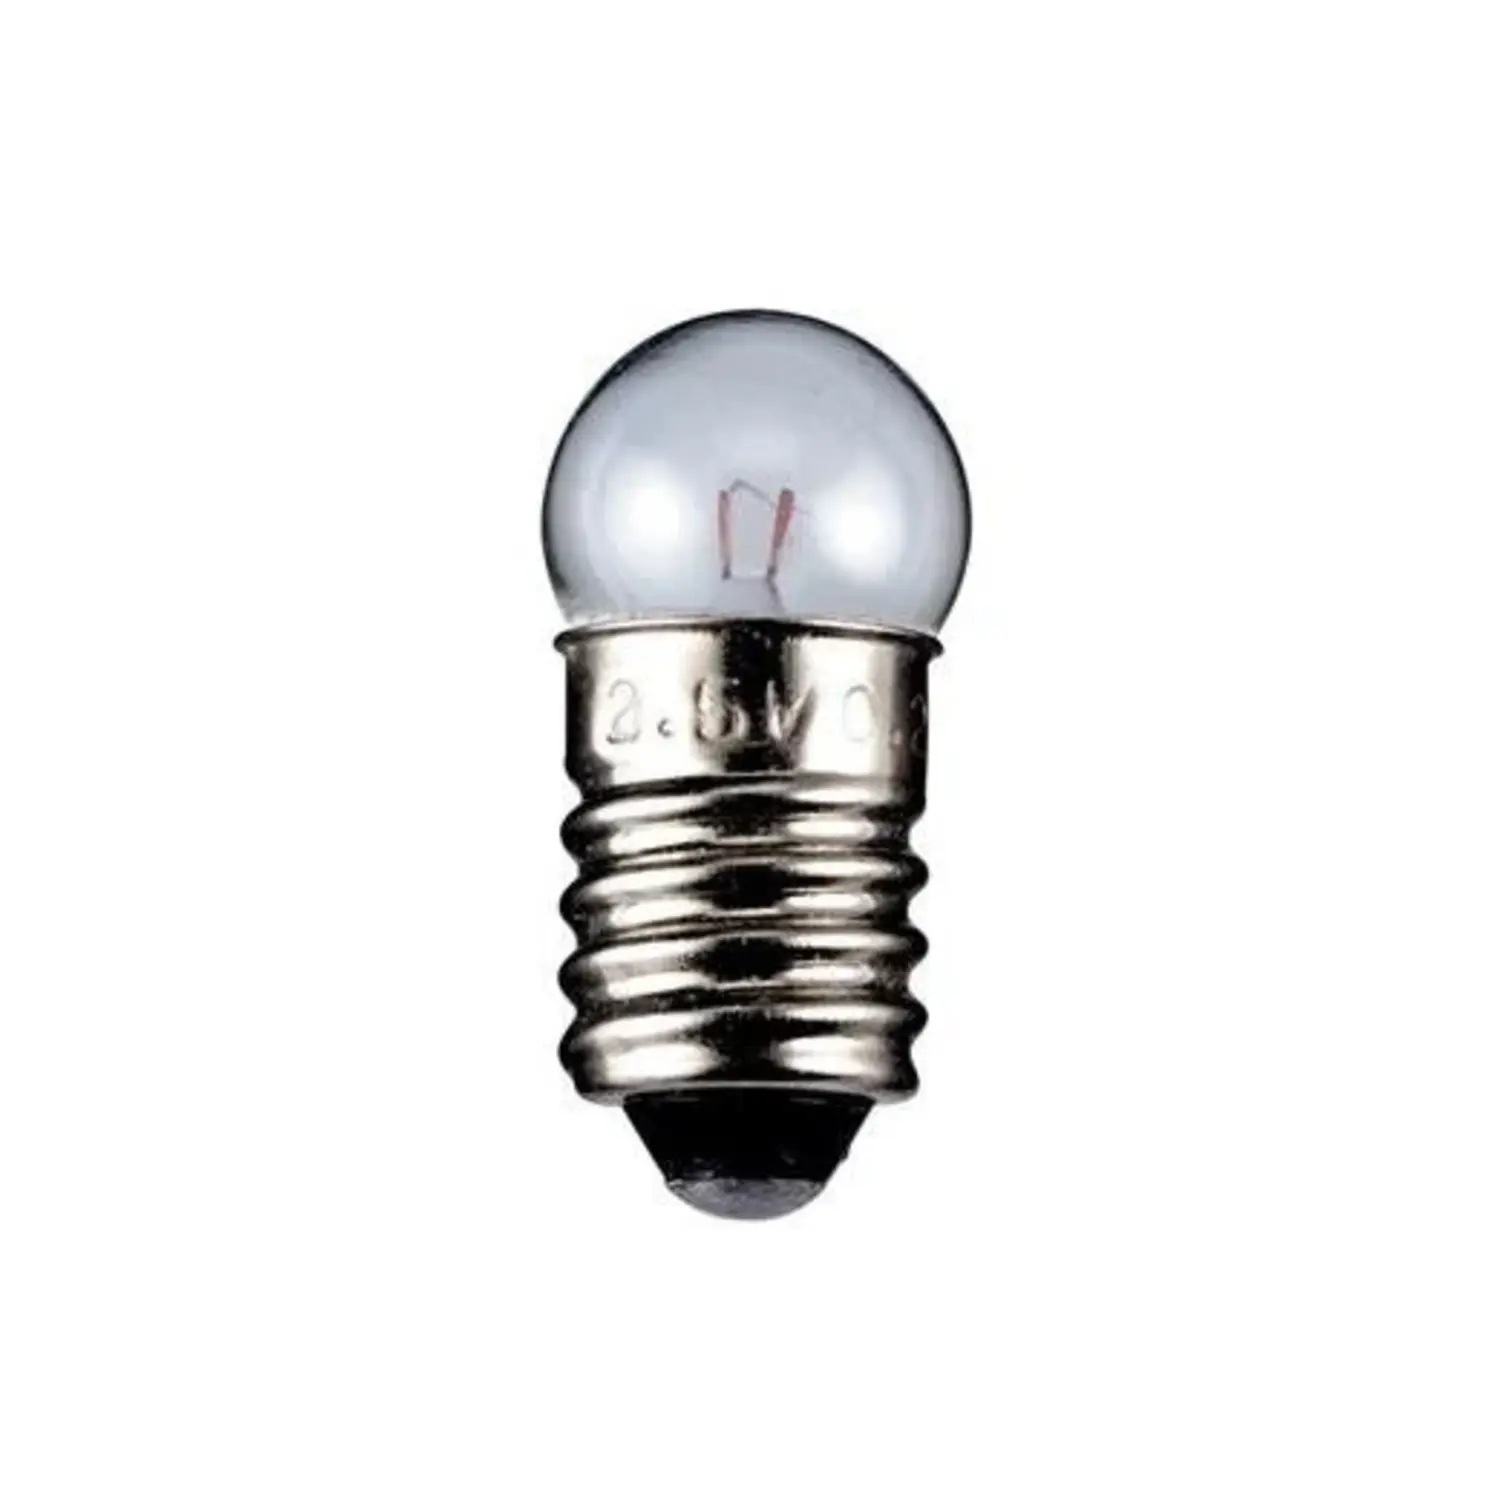 immagine del prodotto lampadina globulare chiara trasparente E10 CE 2,40 watt 12 volt wnt 9327